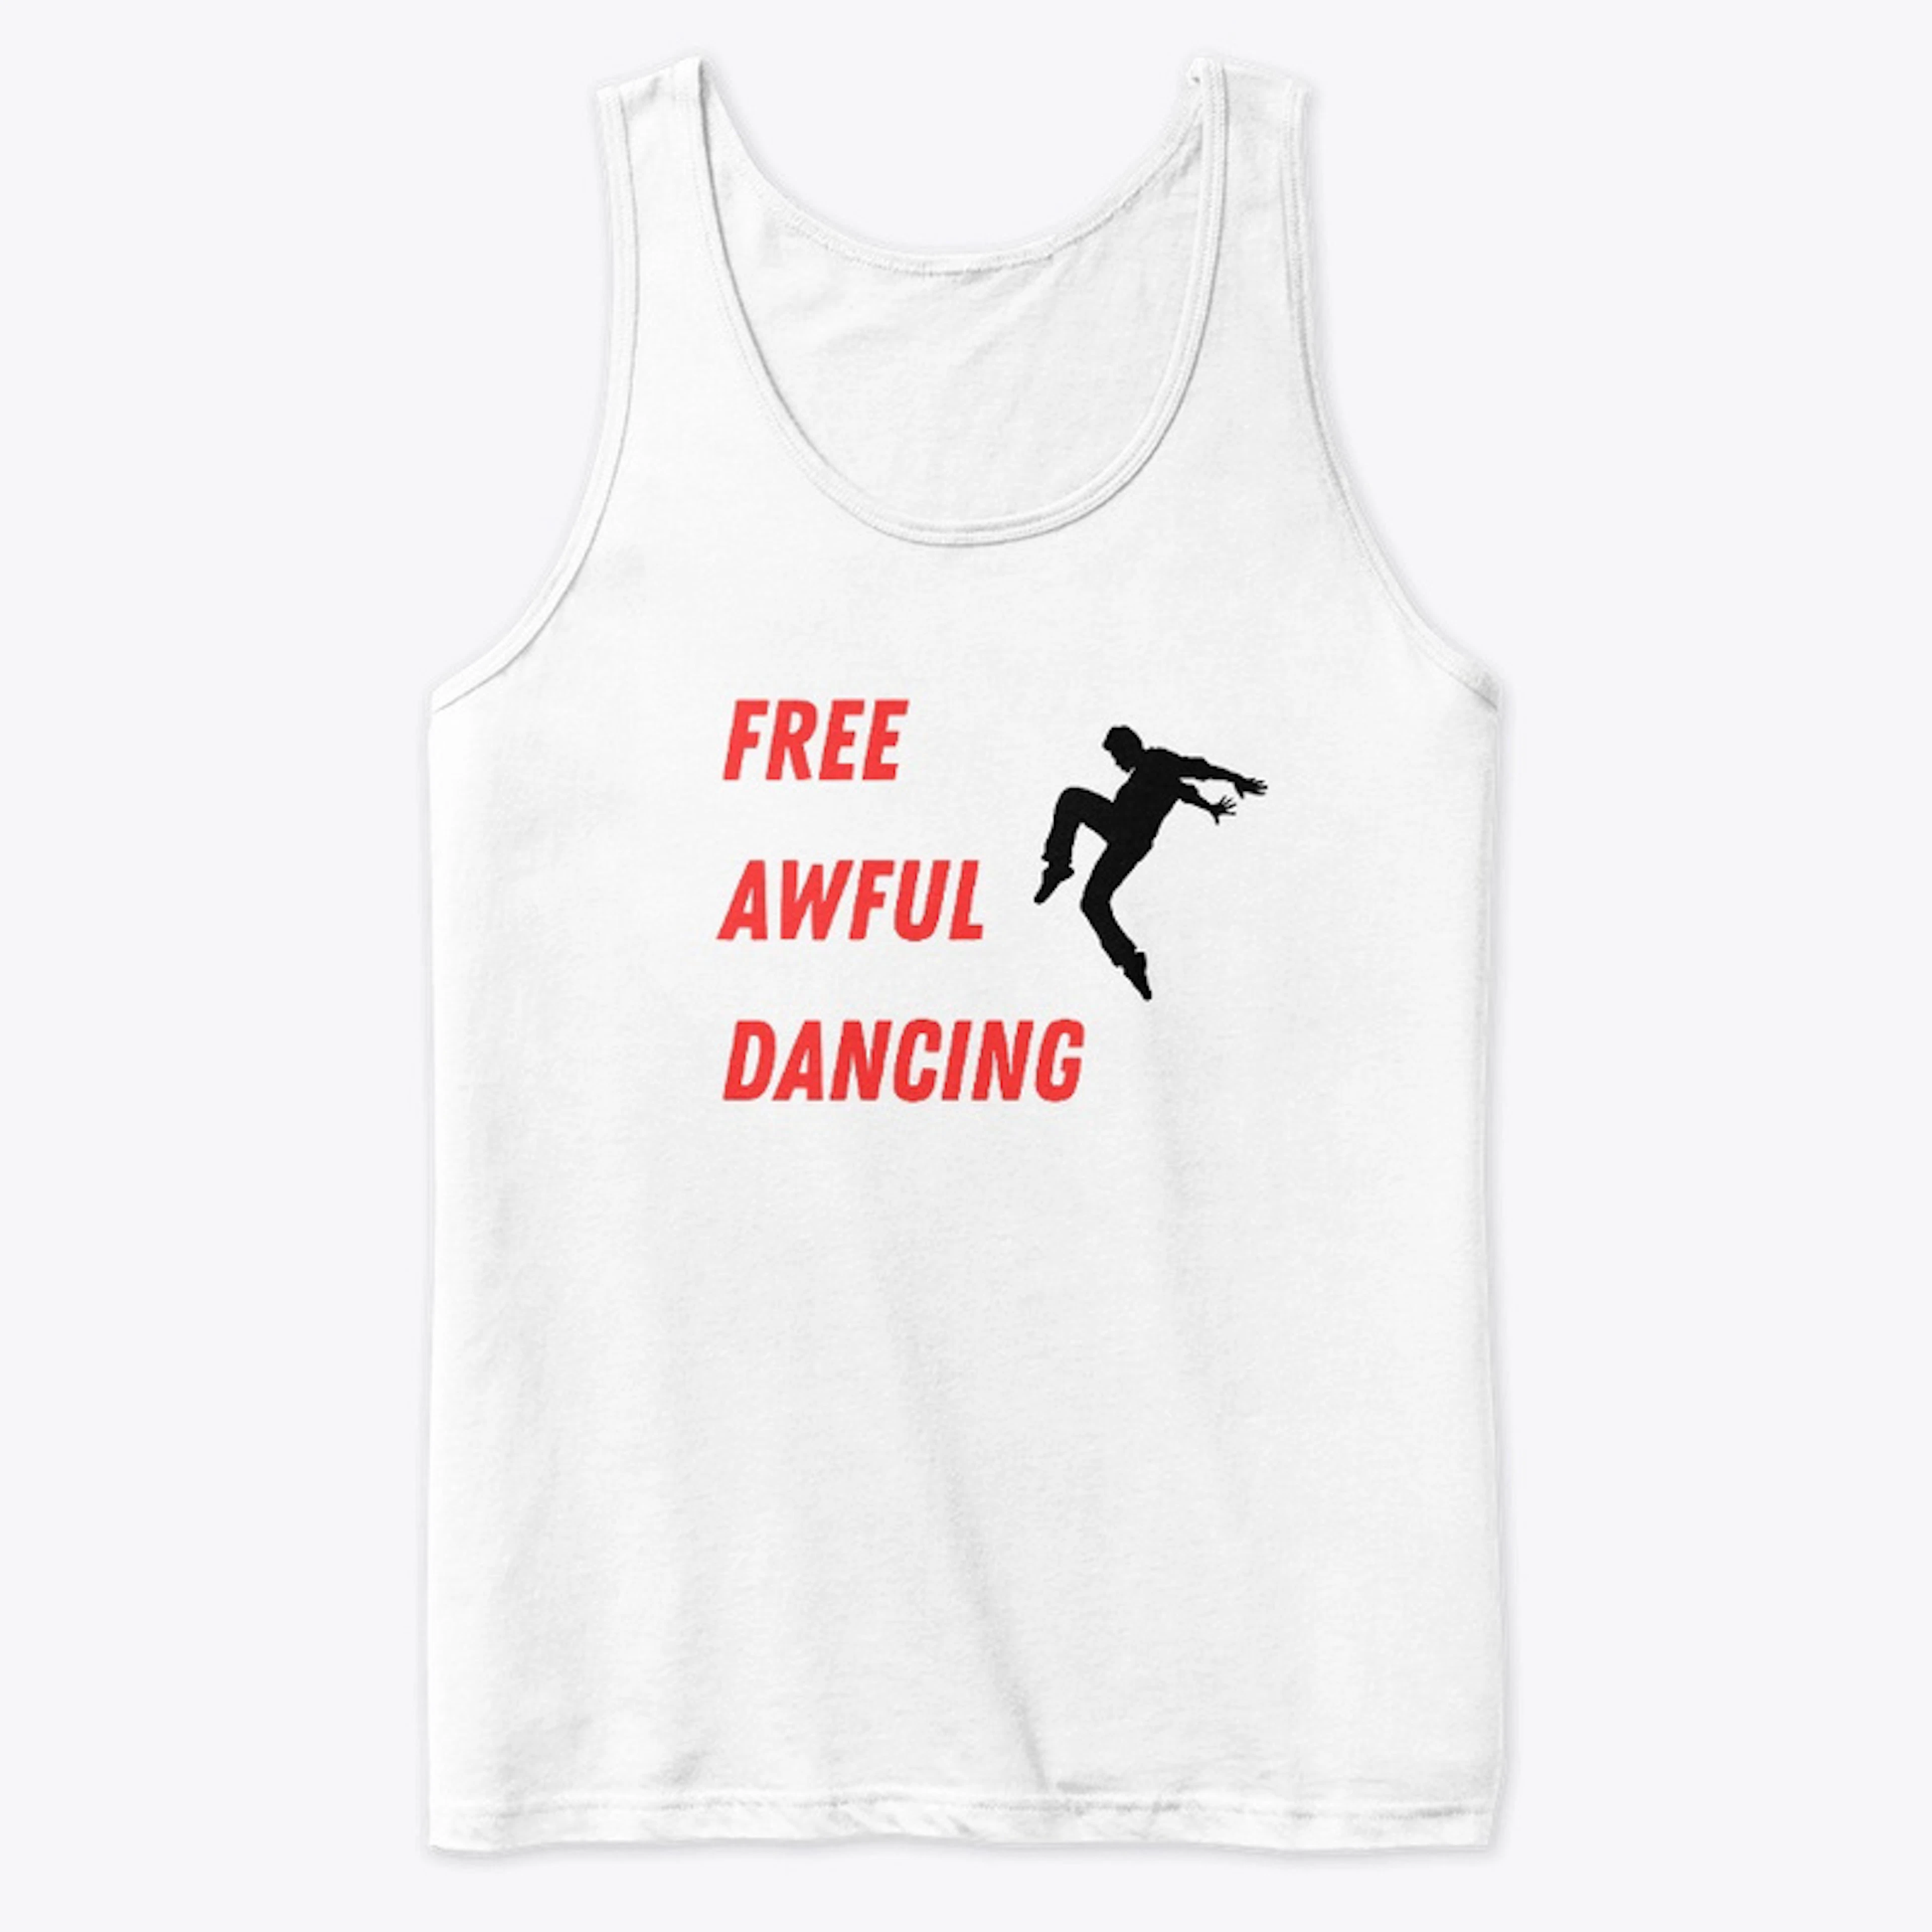 Free Awful Dancing Shirt